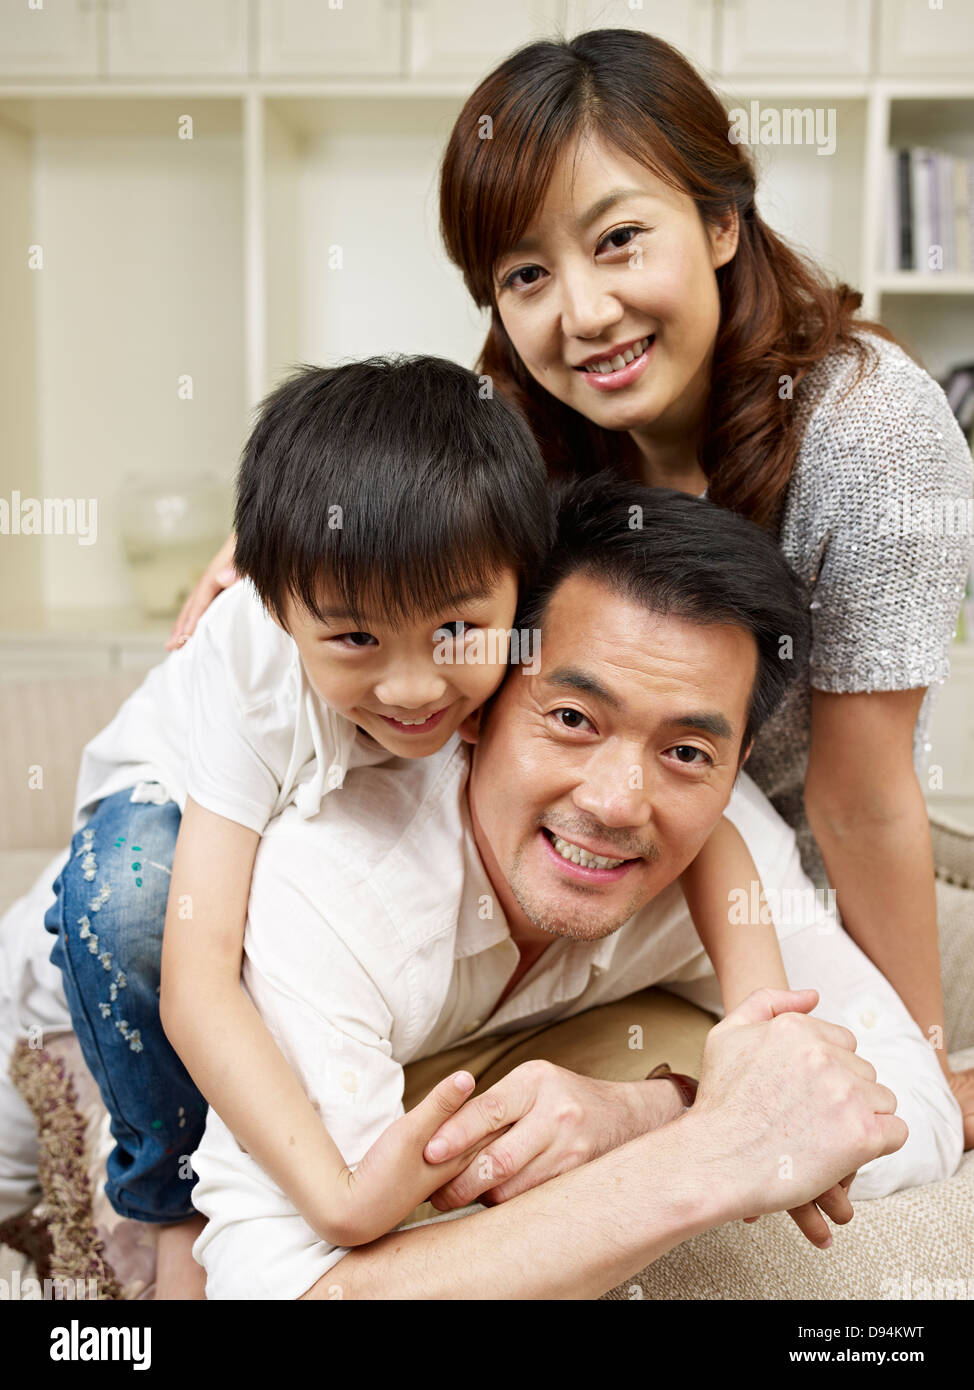 loving family Stock Photo